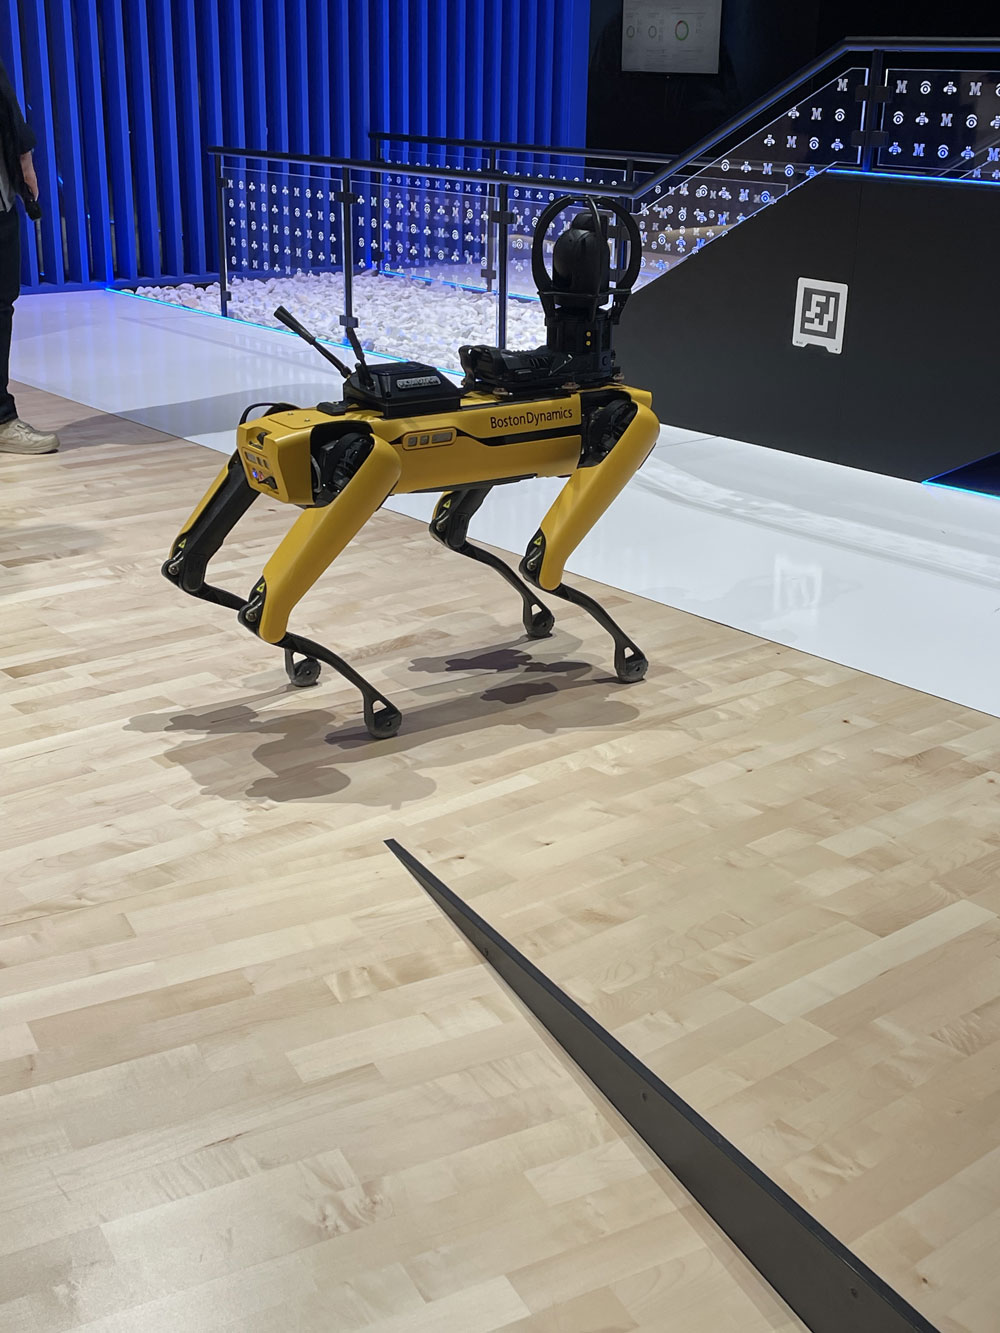 Presentación robot Boston Dynamics